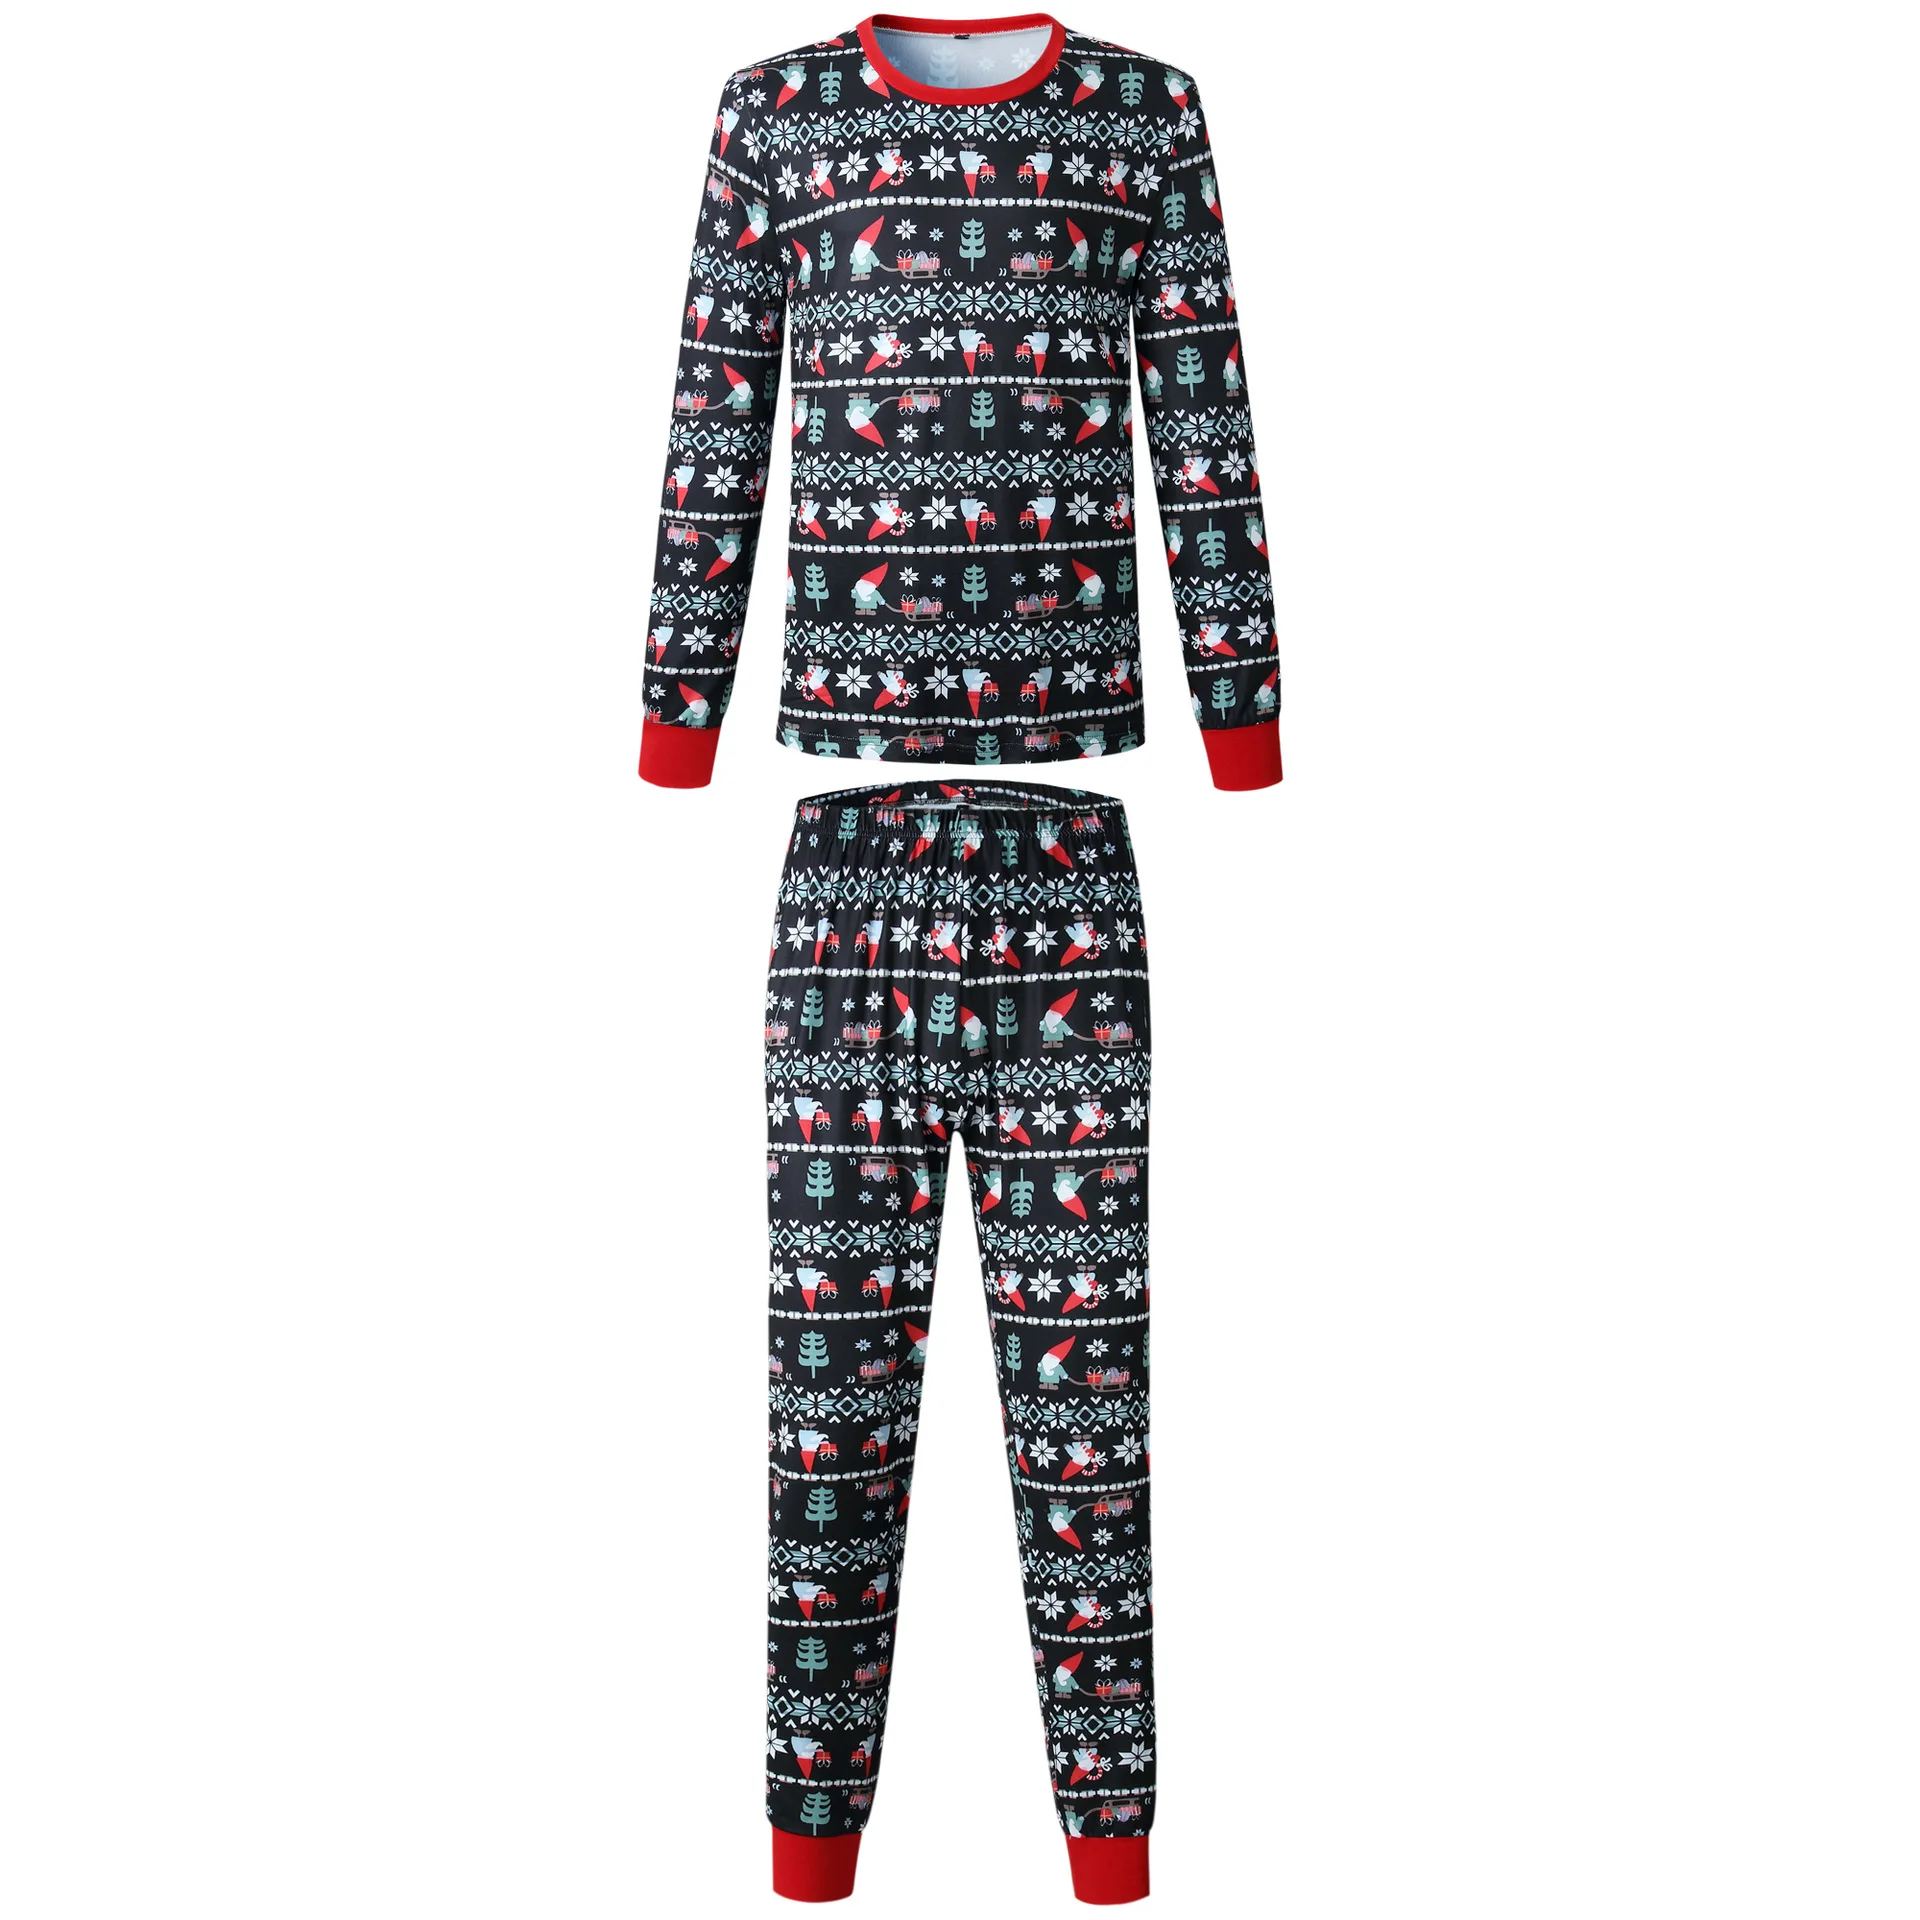 I2u/Новинка г.; рождественские одинаковые комплекты для семьи; пижамы с принтом Санта-Клауса; теплая одежда для сна для мужчин